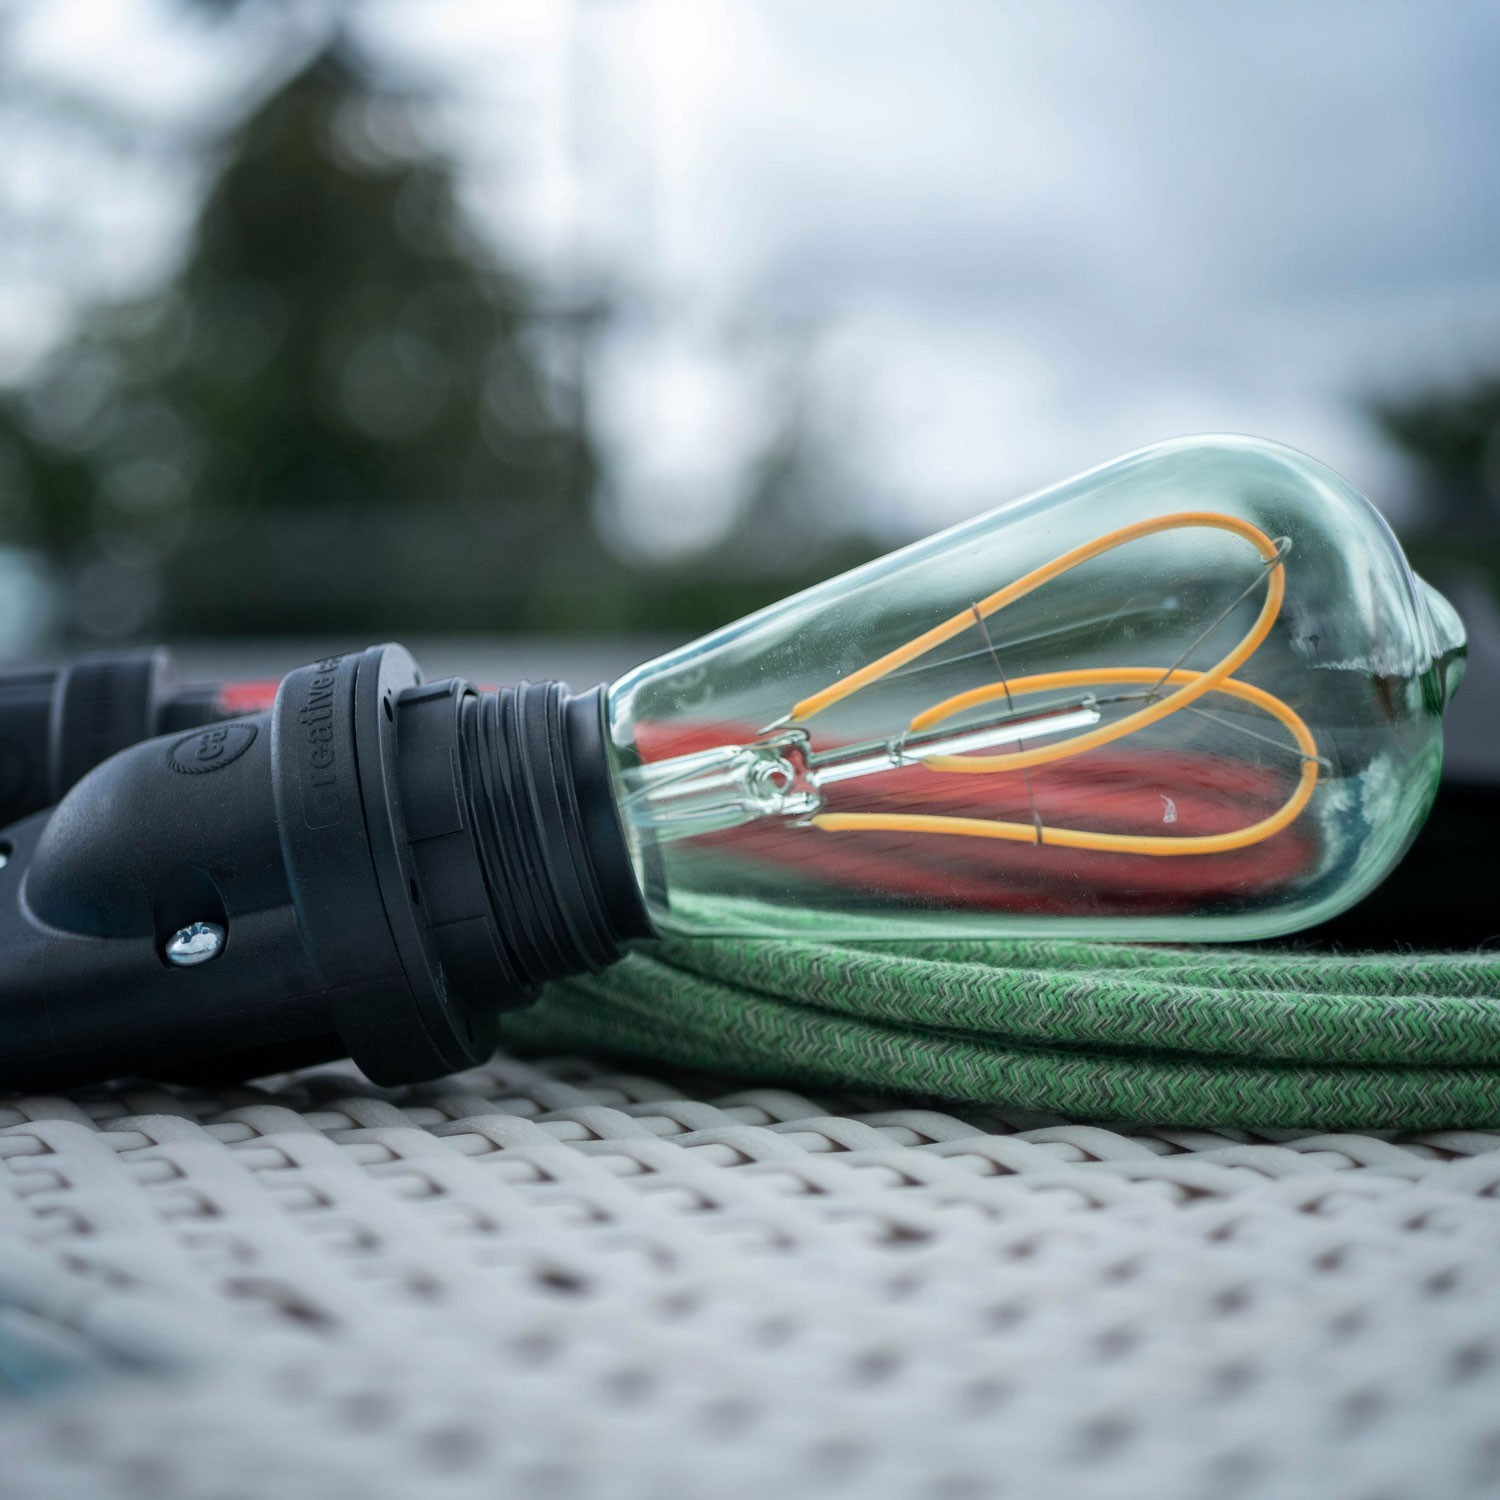 Zunanje viseče svetilo EIVA za senčilo, z 1,5 M tekstilnega kabla, silikonsko rozeto in grlom z IP65 vodoodporno zaščito